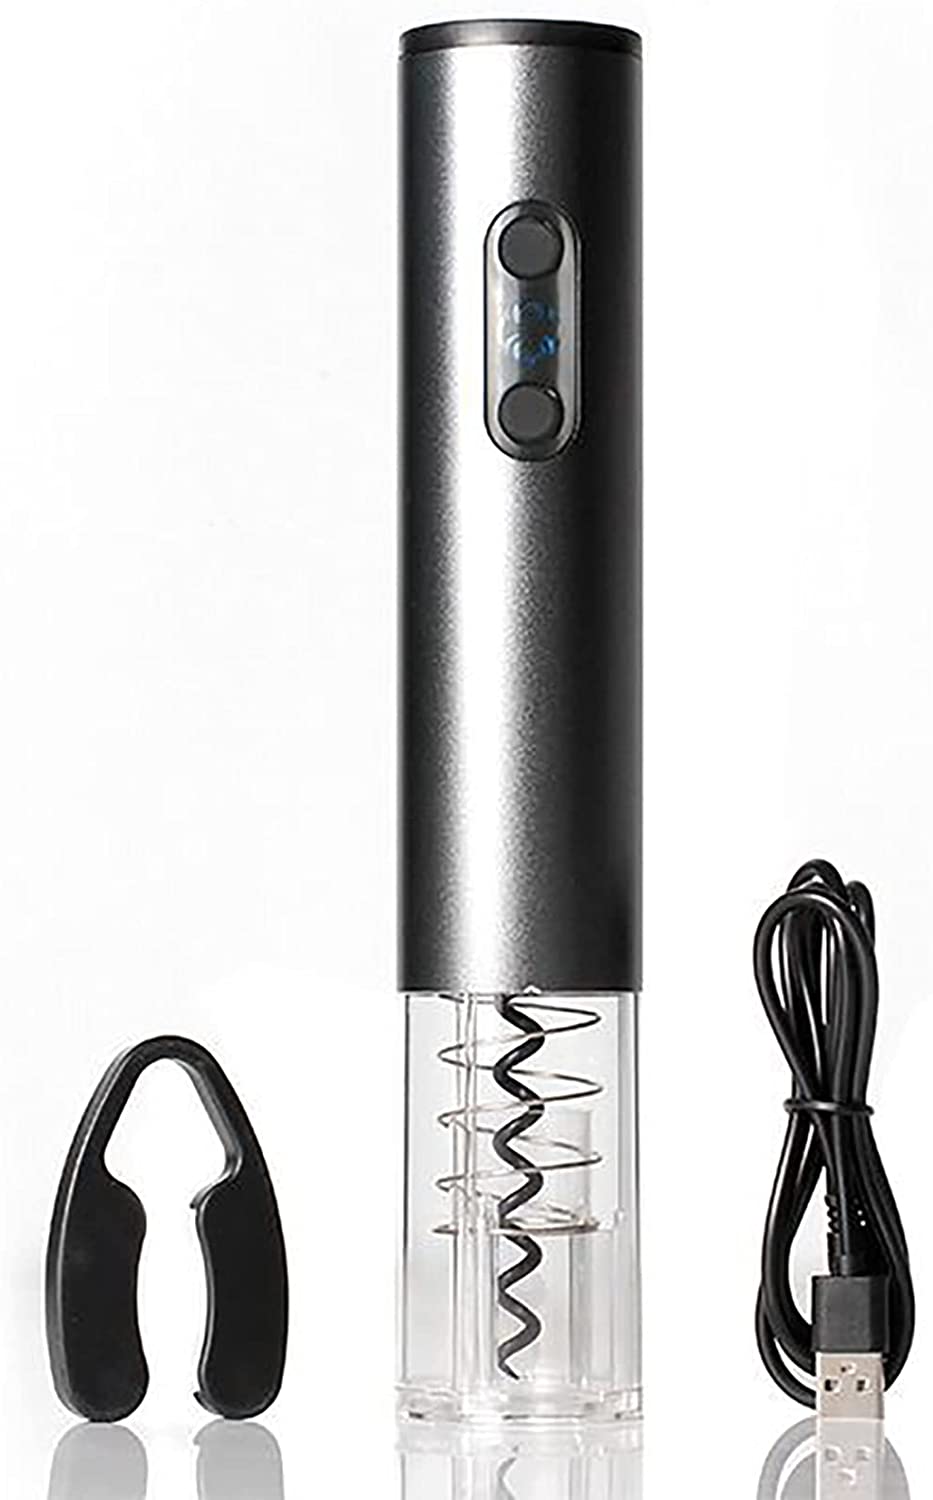 電動ワインオープナー 電動ワインオープナー USB充電式 電池式 自動栓抜き フォイルカッター ワインアクセサリーセット 誕生日プレゼント